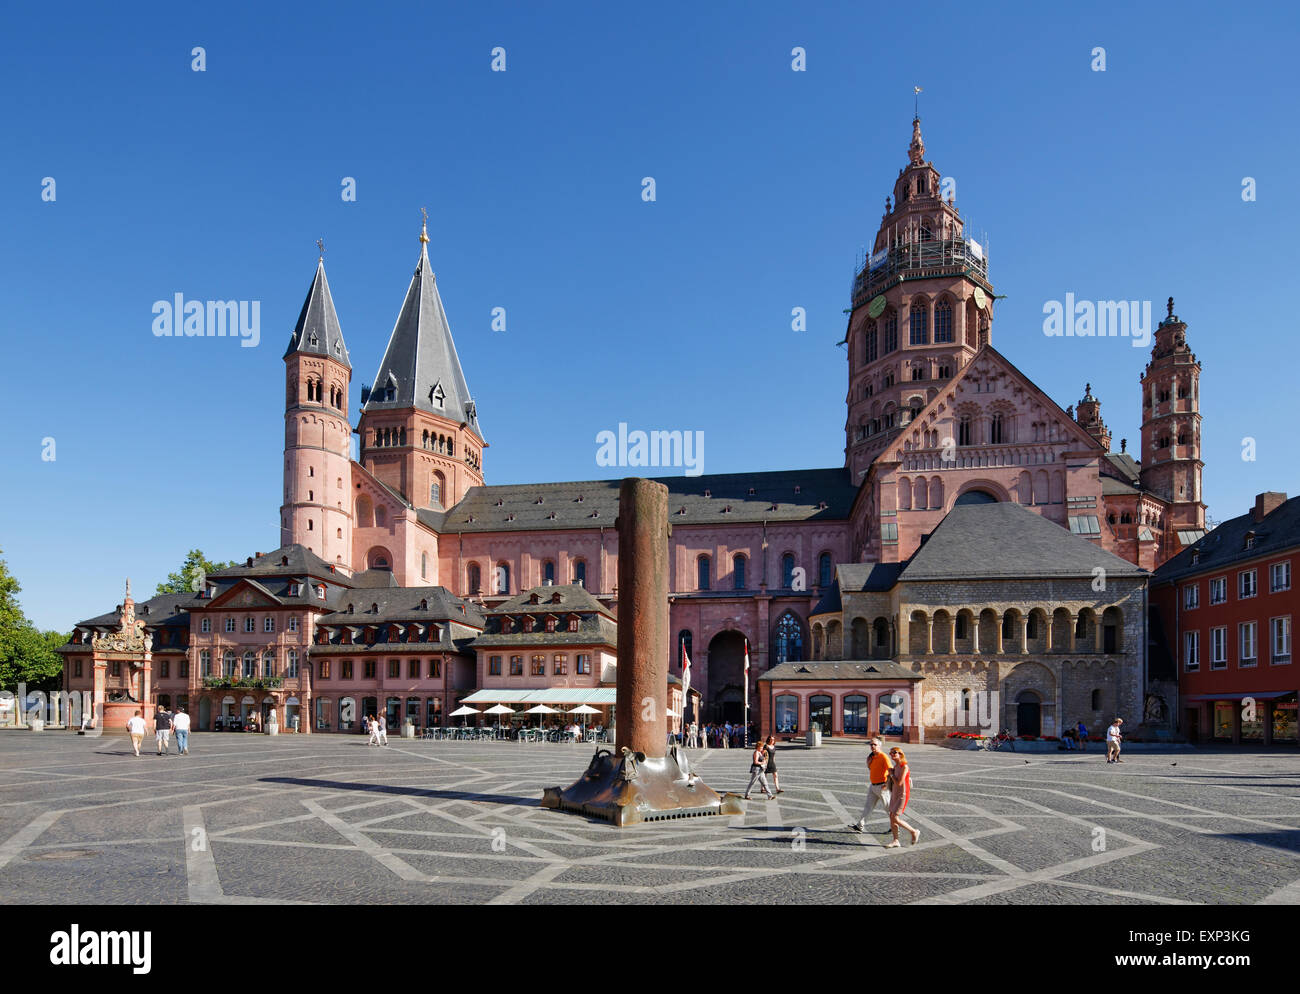 Cattedrale di Magonza o San Martin's Cathedral e Heunensäule Vittoria Colonna, Piazza del mercato, Mainz, Renania-Palatinato, Germania Foto Stock